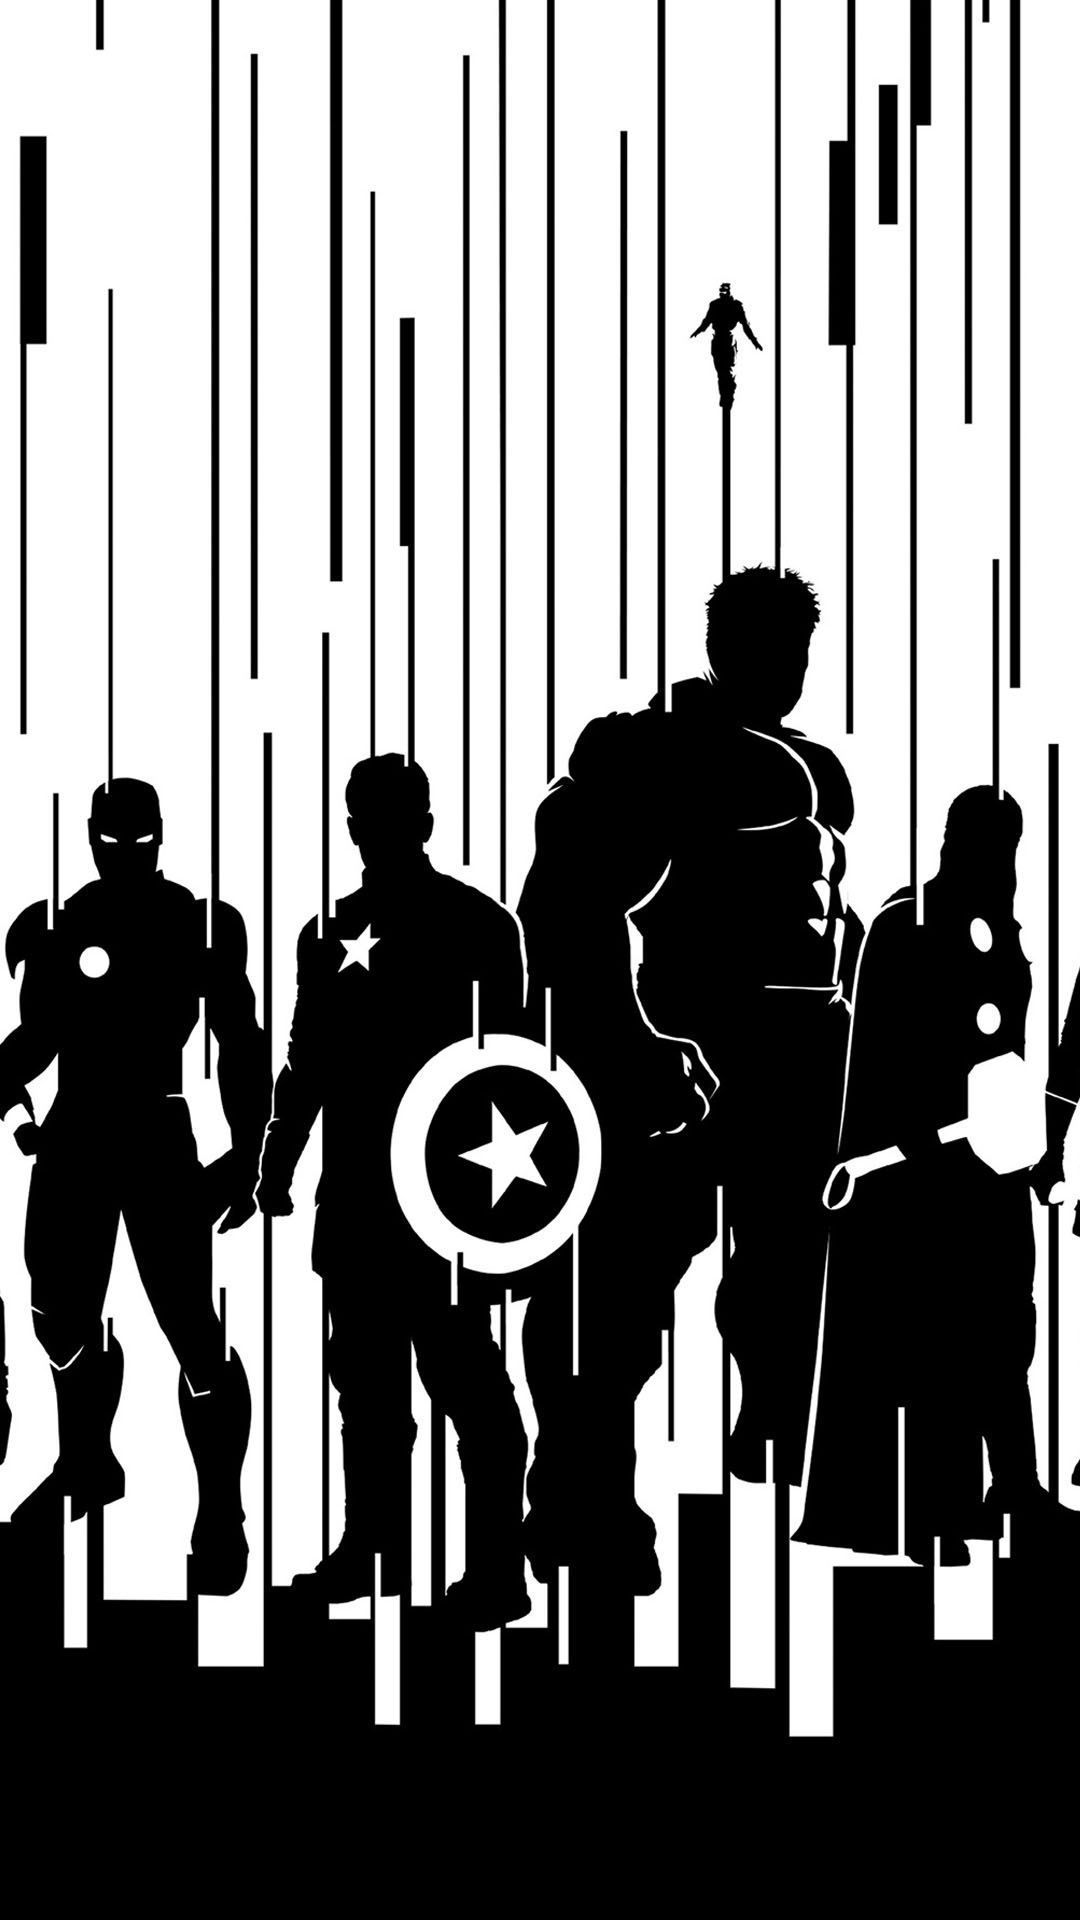 Superhero Black and White Wallpaper. Avengers wallpaper, Superhero wallpaper, Marvel iphone wallpaper